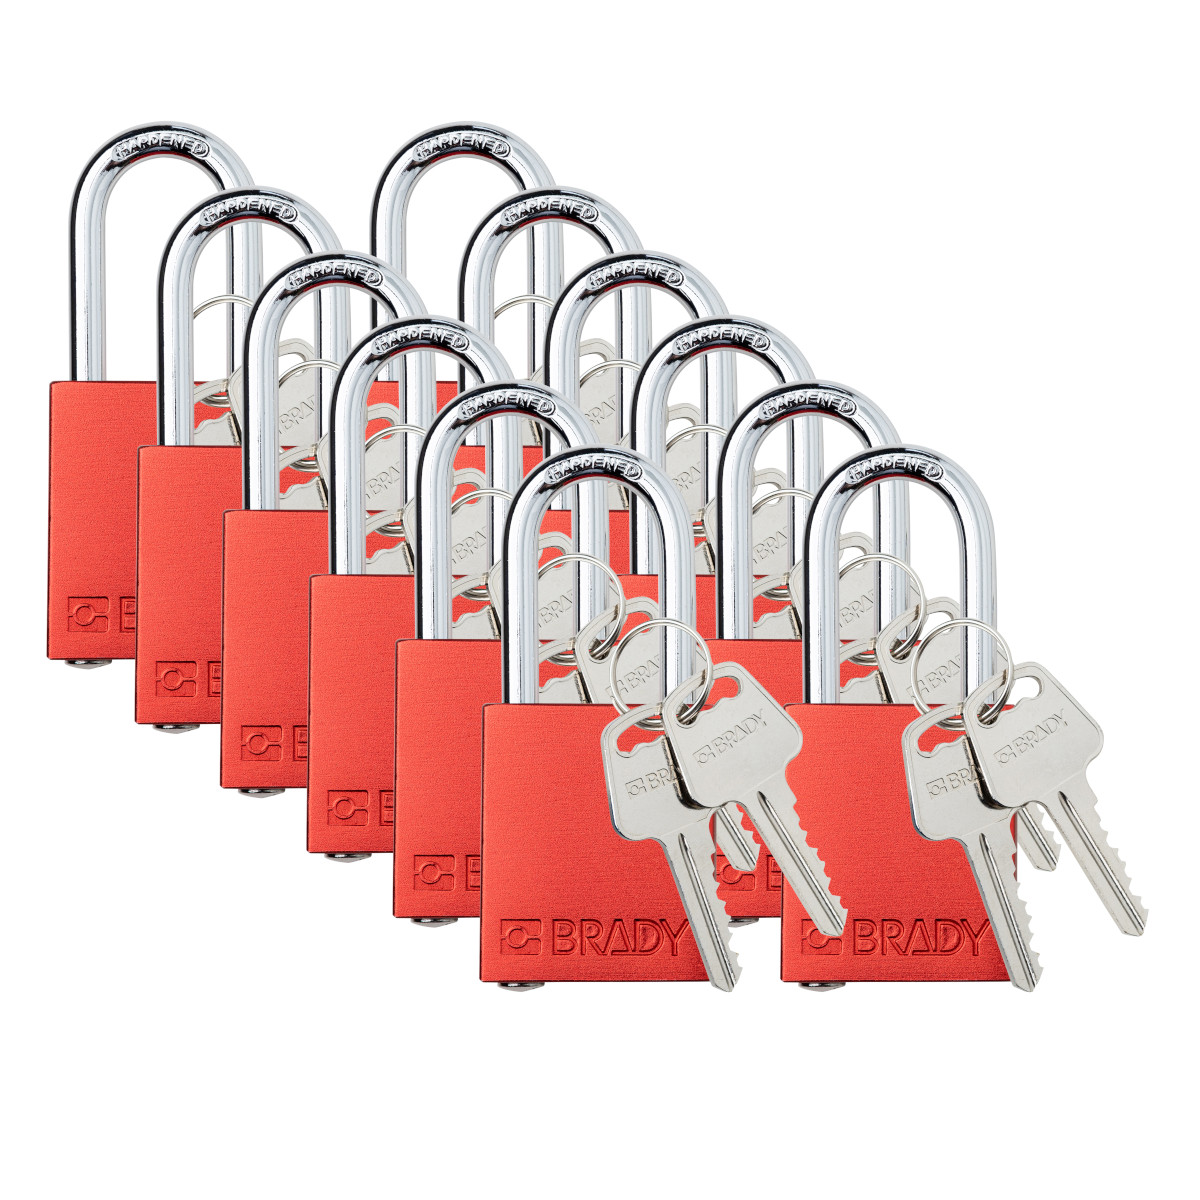 Candados de nailon para bloqueo de seguridad: Juegos de llaves iguales,  cantidad y color únicos., Brady